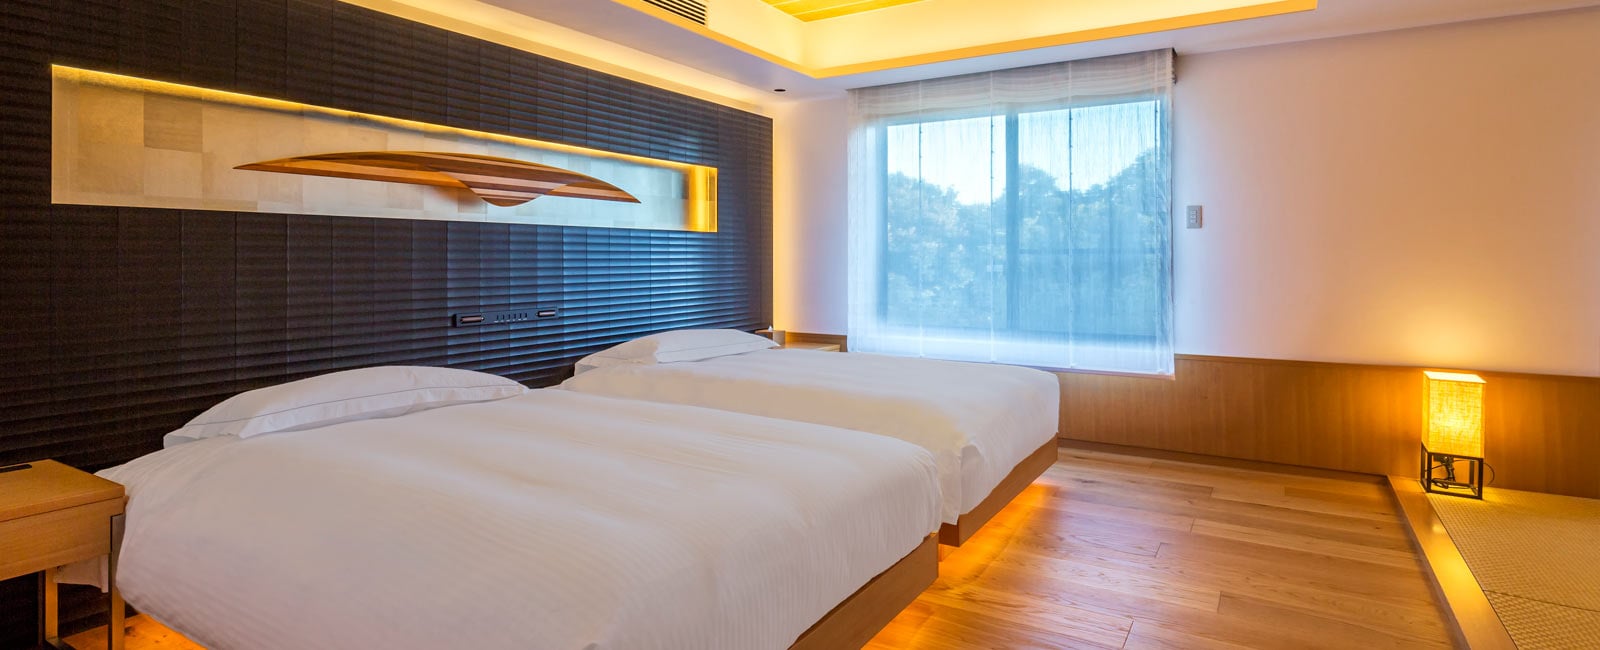 Bedroom at The Bay Forest Odawara by Hilton Club, Odawara, Kanagawa, Japan